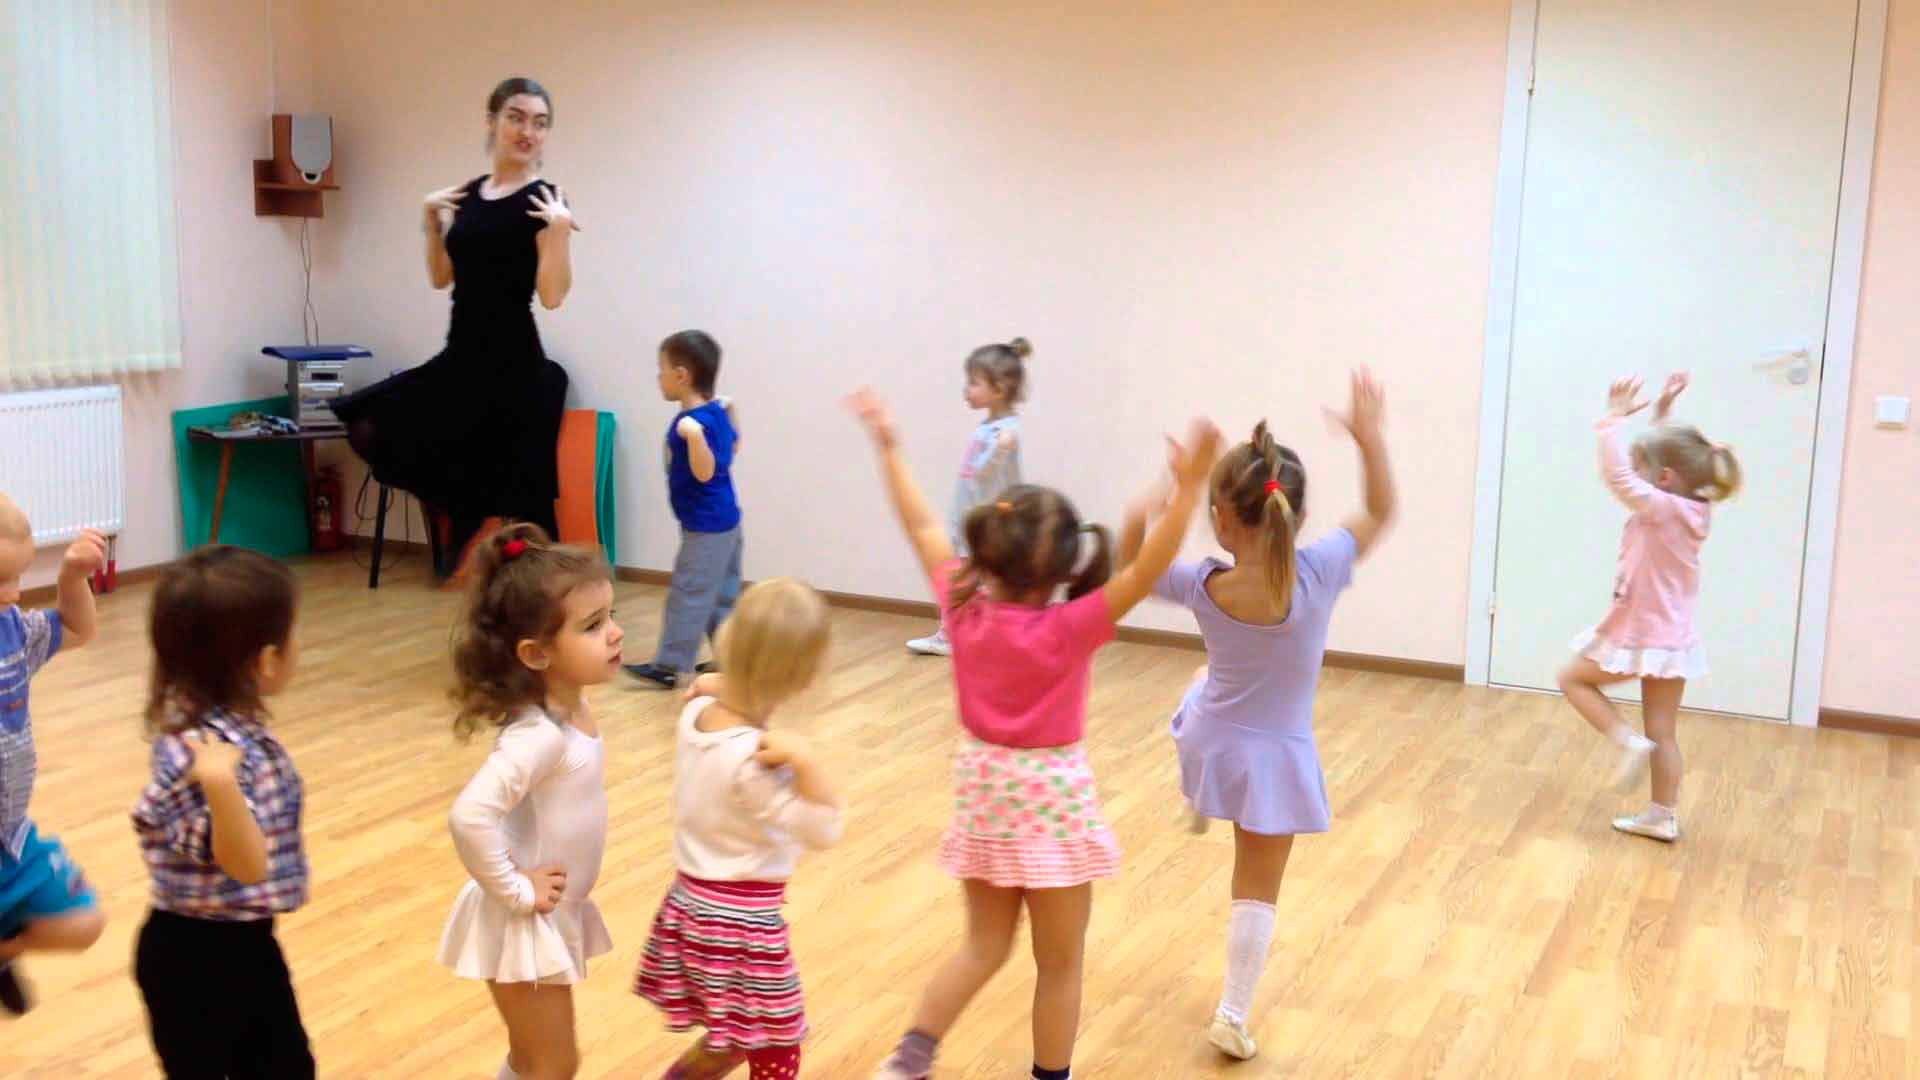 Танец селфи в детском саду. Танцы для детей в детском саду. Танцы для детей в ДОУ. Малыши на танцах в детском саду. Танцевально игровая гимнастика в детском саду.